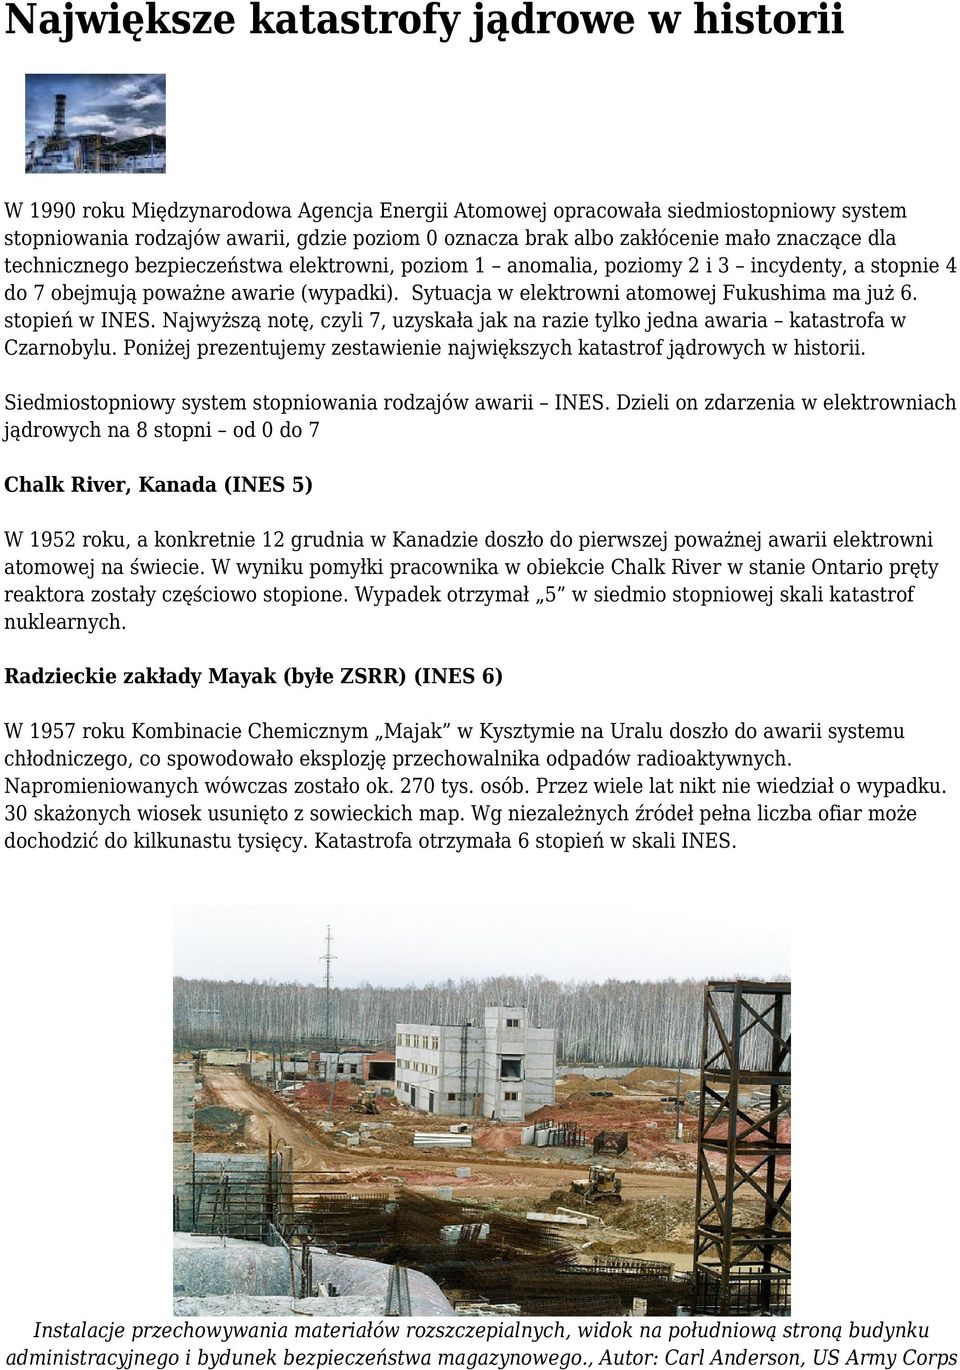 Sytuacja w elektrowni atomowej Fukushima ma już 6. stopień w INES. Najwyższą notę, czyli 7, uzyskała jak na razie tylko jedna awaria katastrofa w Czarnobylu.